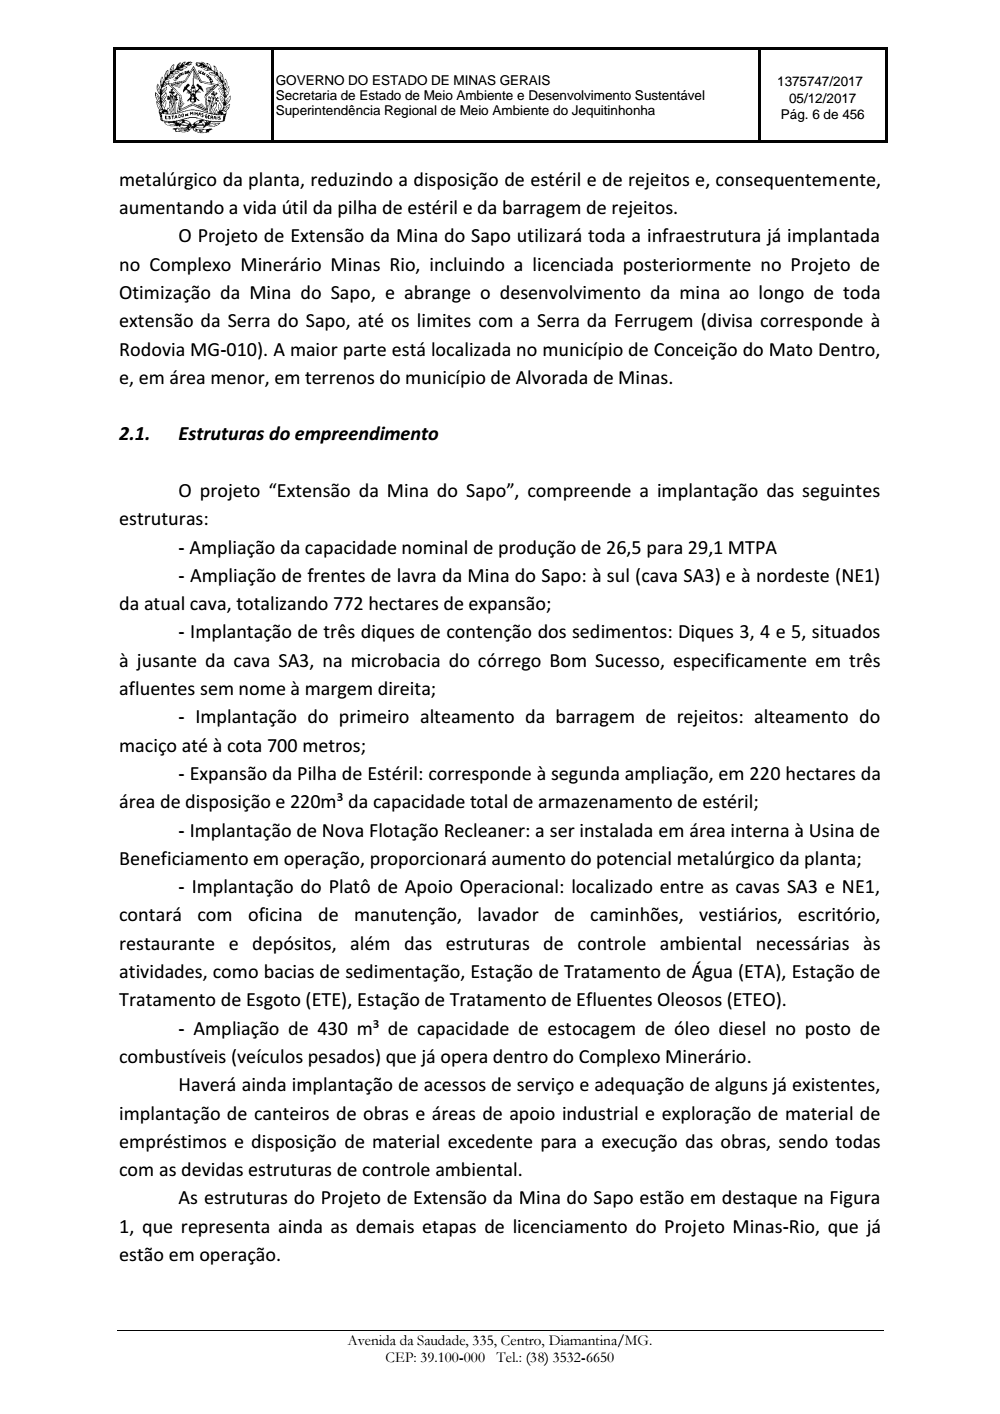 Page 6 from Parecer único da Secretaria de estado de Meio Ambiente e Desenvolvimento Sustentável (SEMAD)